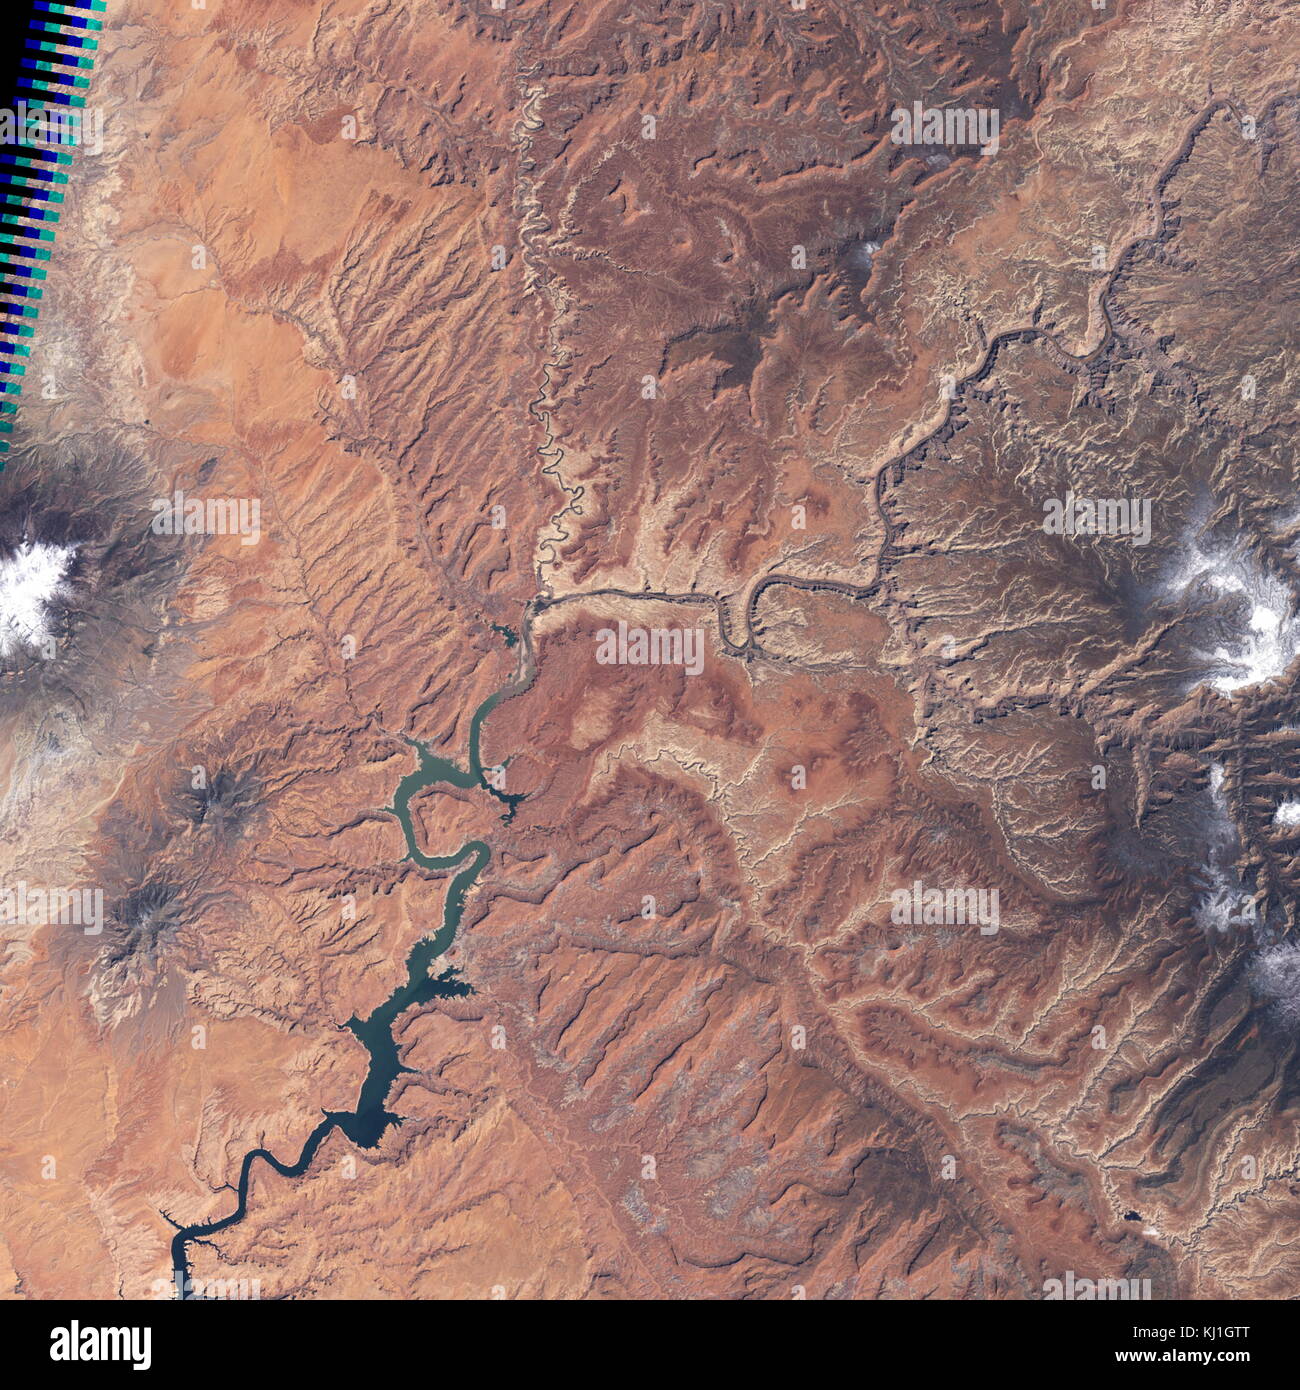 Lake Powell, est un réservoir sur la rivière Colorado, chevauchant la frontière entre l'Utah et l'Arizona (la plupart d'elle, avec pont en arc-en-ciel, est dans l'Utah). C'est le deuxième plus grand réservoir de capacité maximale de l'eau aux États-Unis derrière le Lac Mead. Image satellite, prises en 2004 Banque D'Images